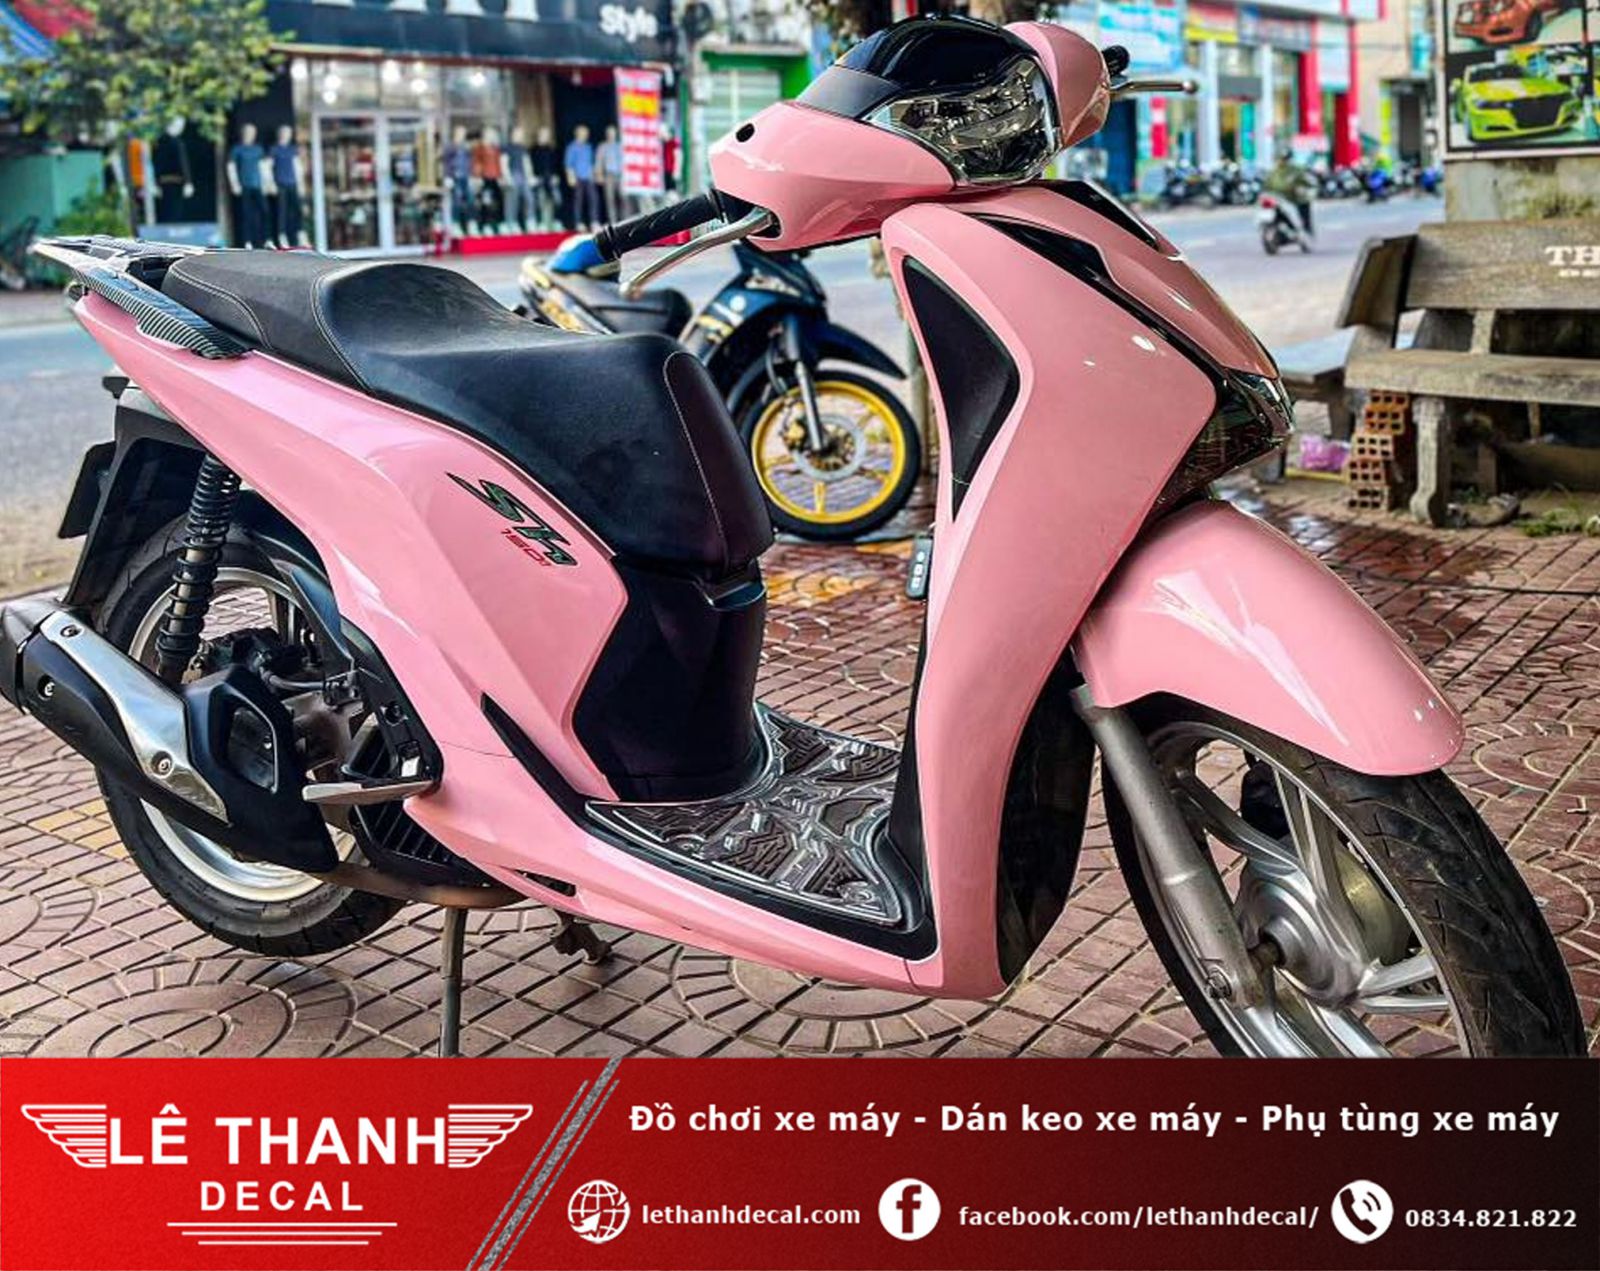 [TOP] 10+ tiệm dán decal xe máy tại huyện Củ Chi uy tín, chất lượng 2023 